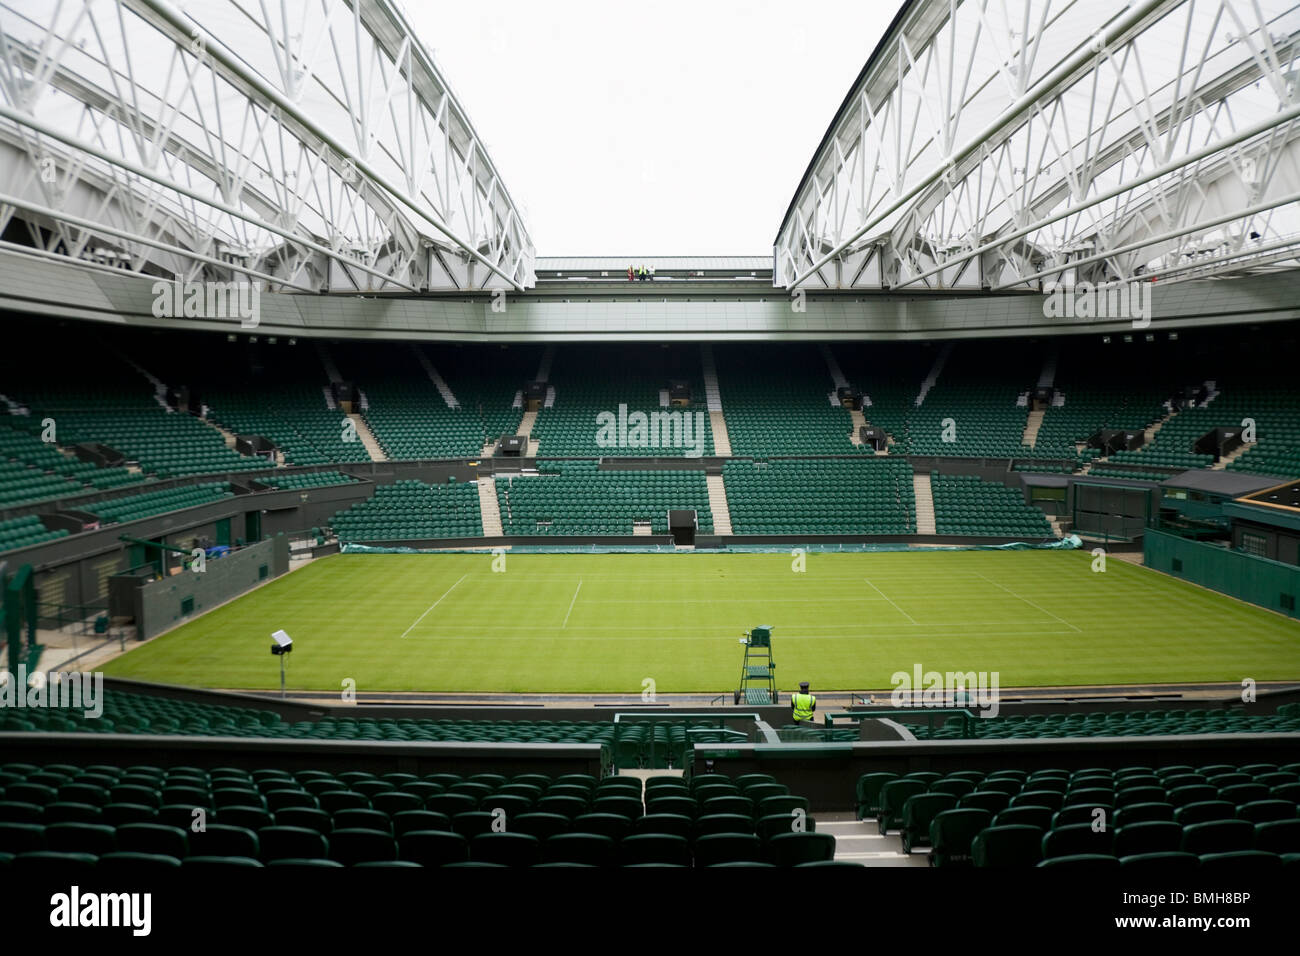 Centre Court Wimbledon / tennis Championship stadium arena with the roof closing. Wimbledon, UK. Stock Photo